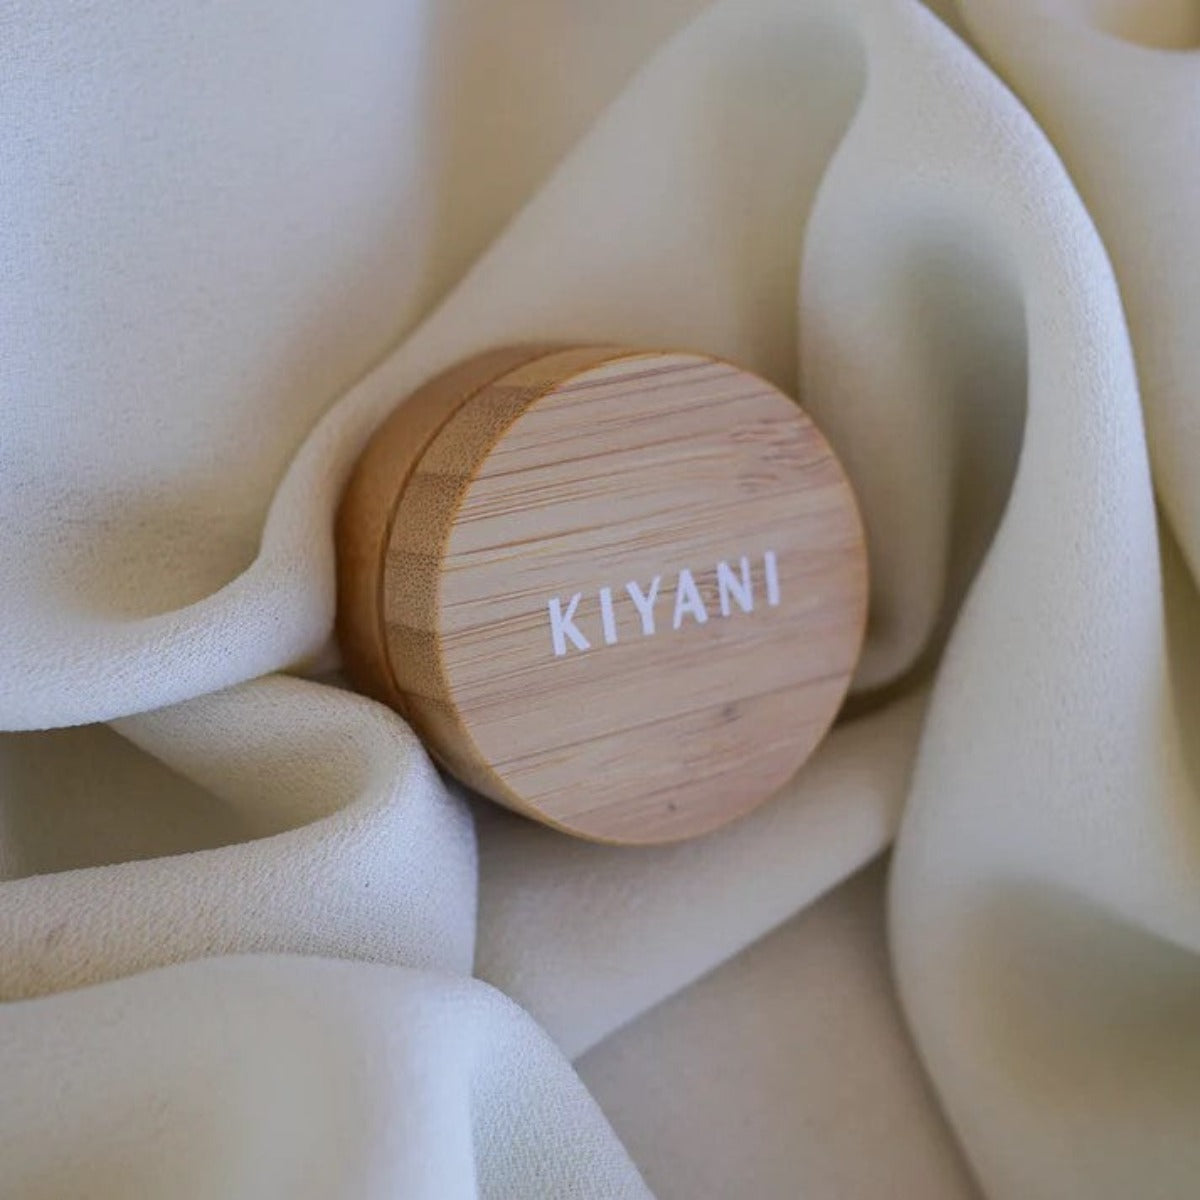 Kiyani Healing Salve in Reusable Bamboo Container